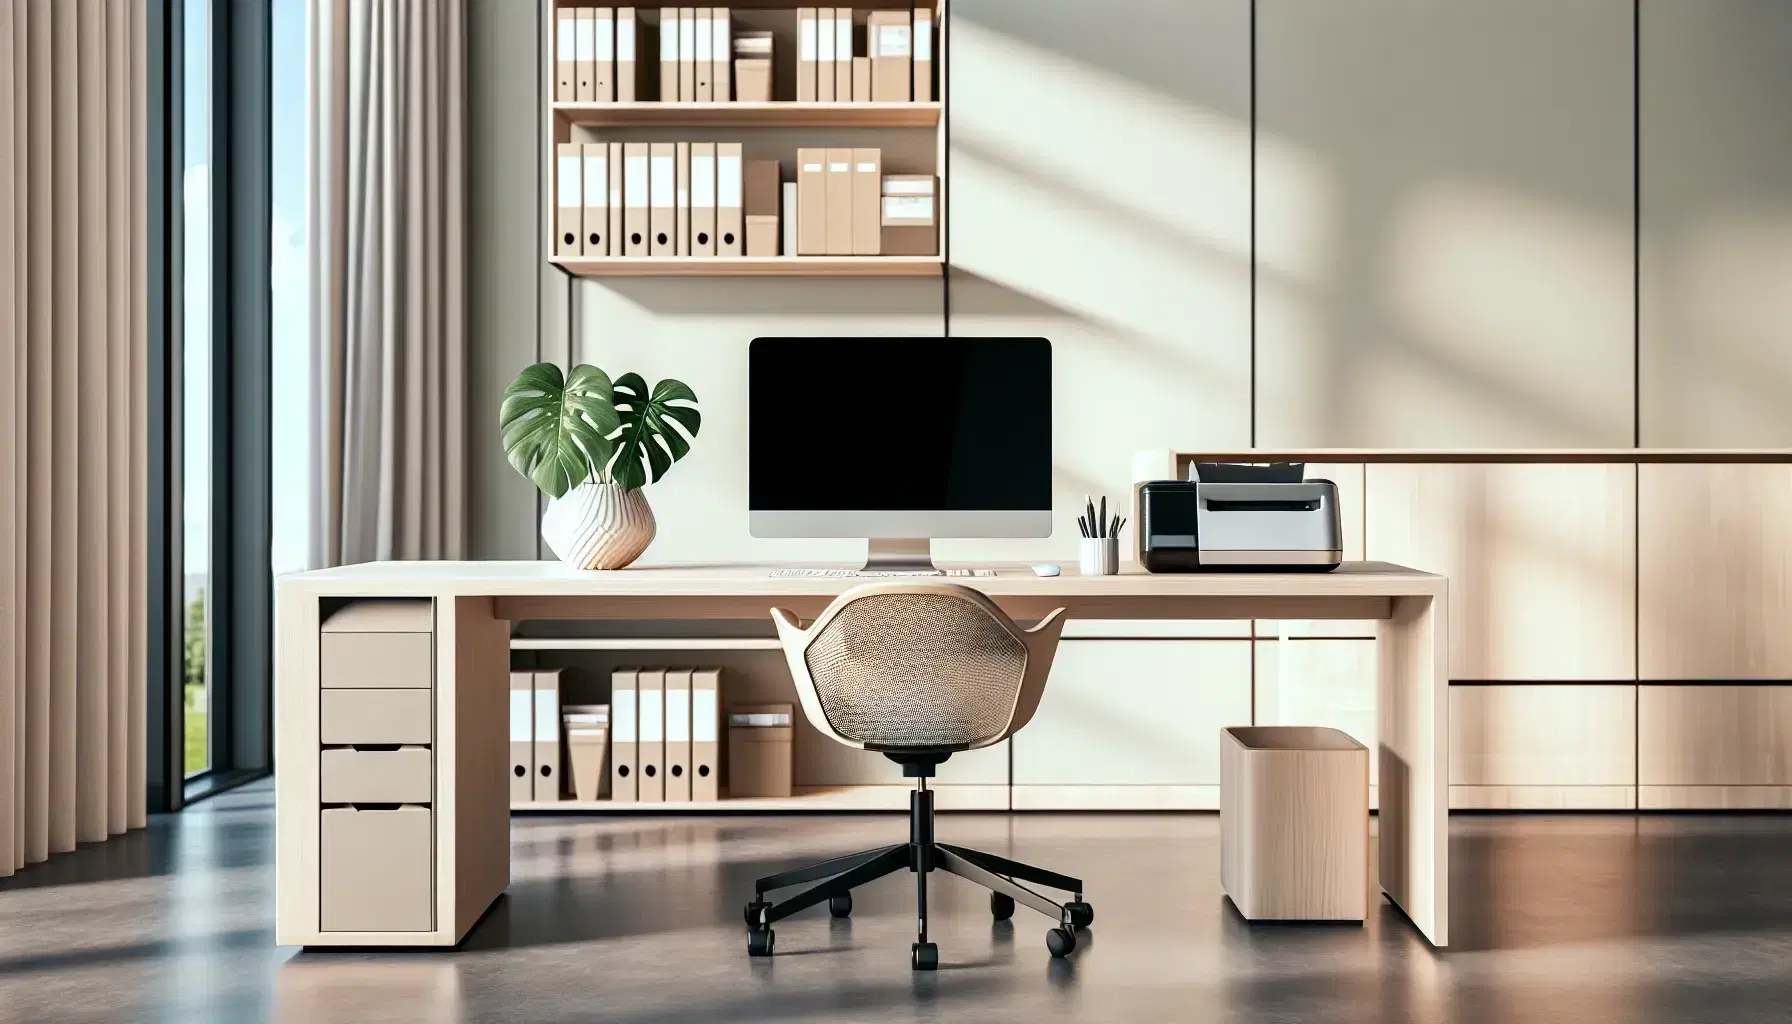 Oficina moderna y luminosa con escritorio de madera, ordenador apagado, silla ergonómica, estantería con libros y planta, sin marcas visibles.